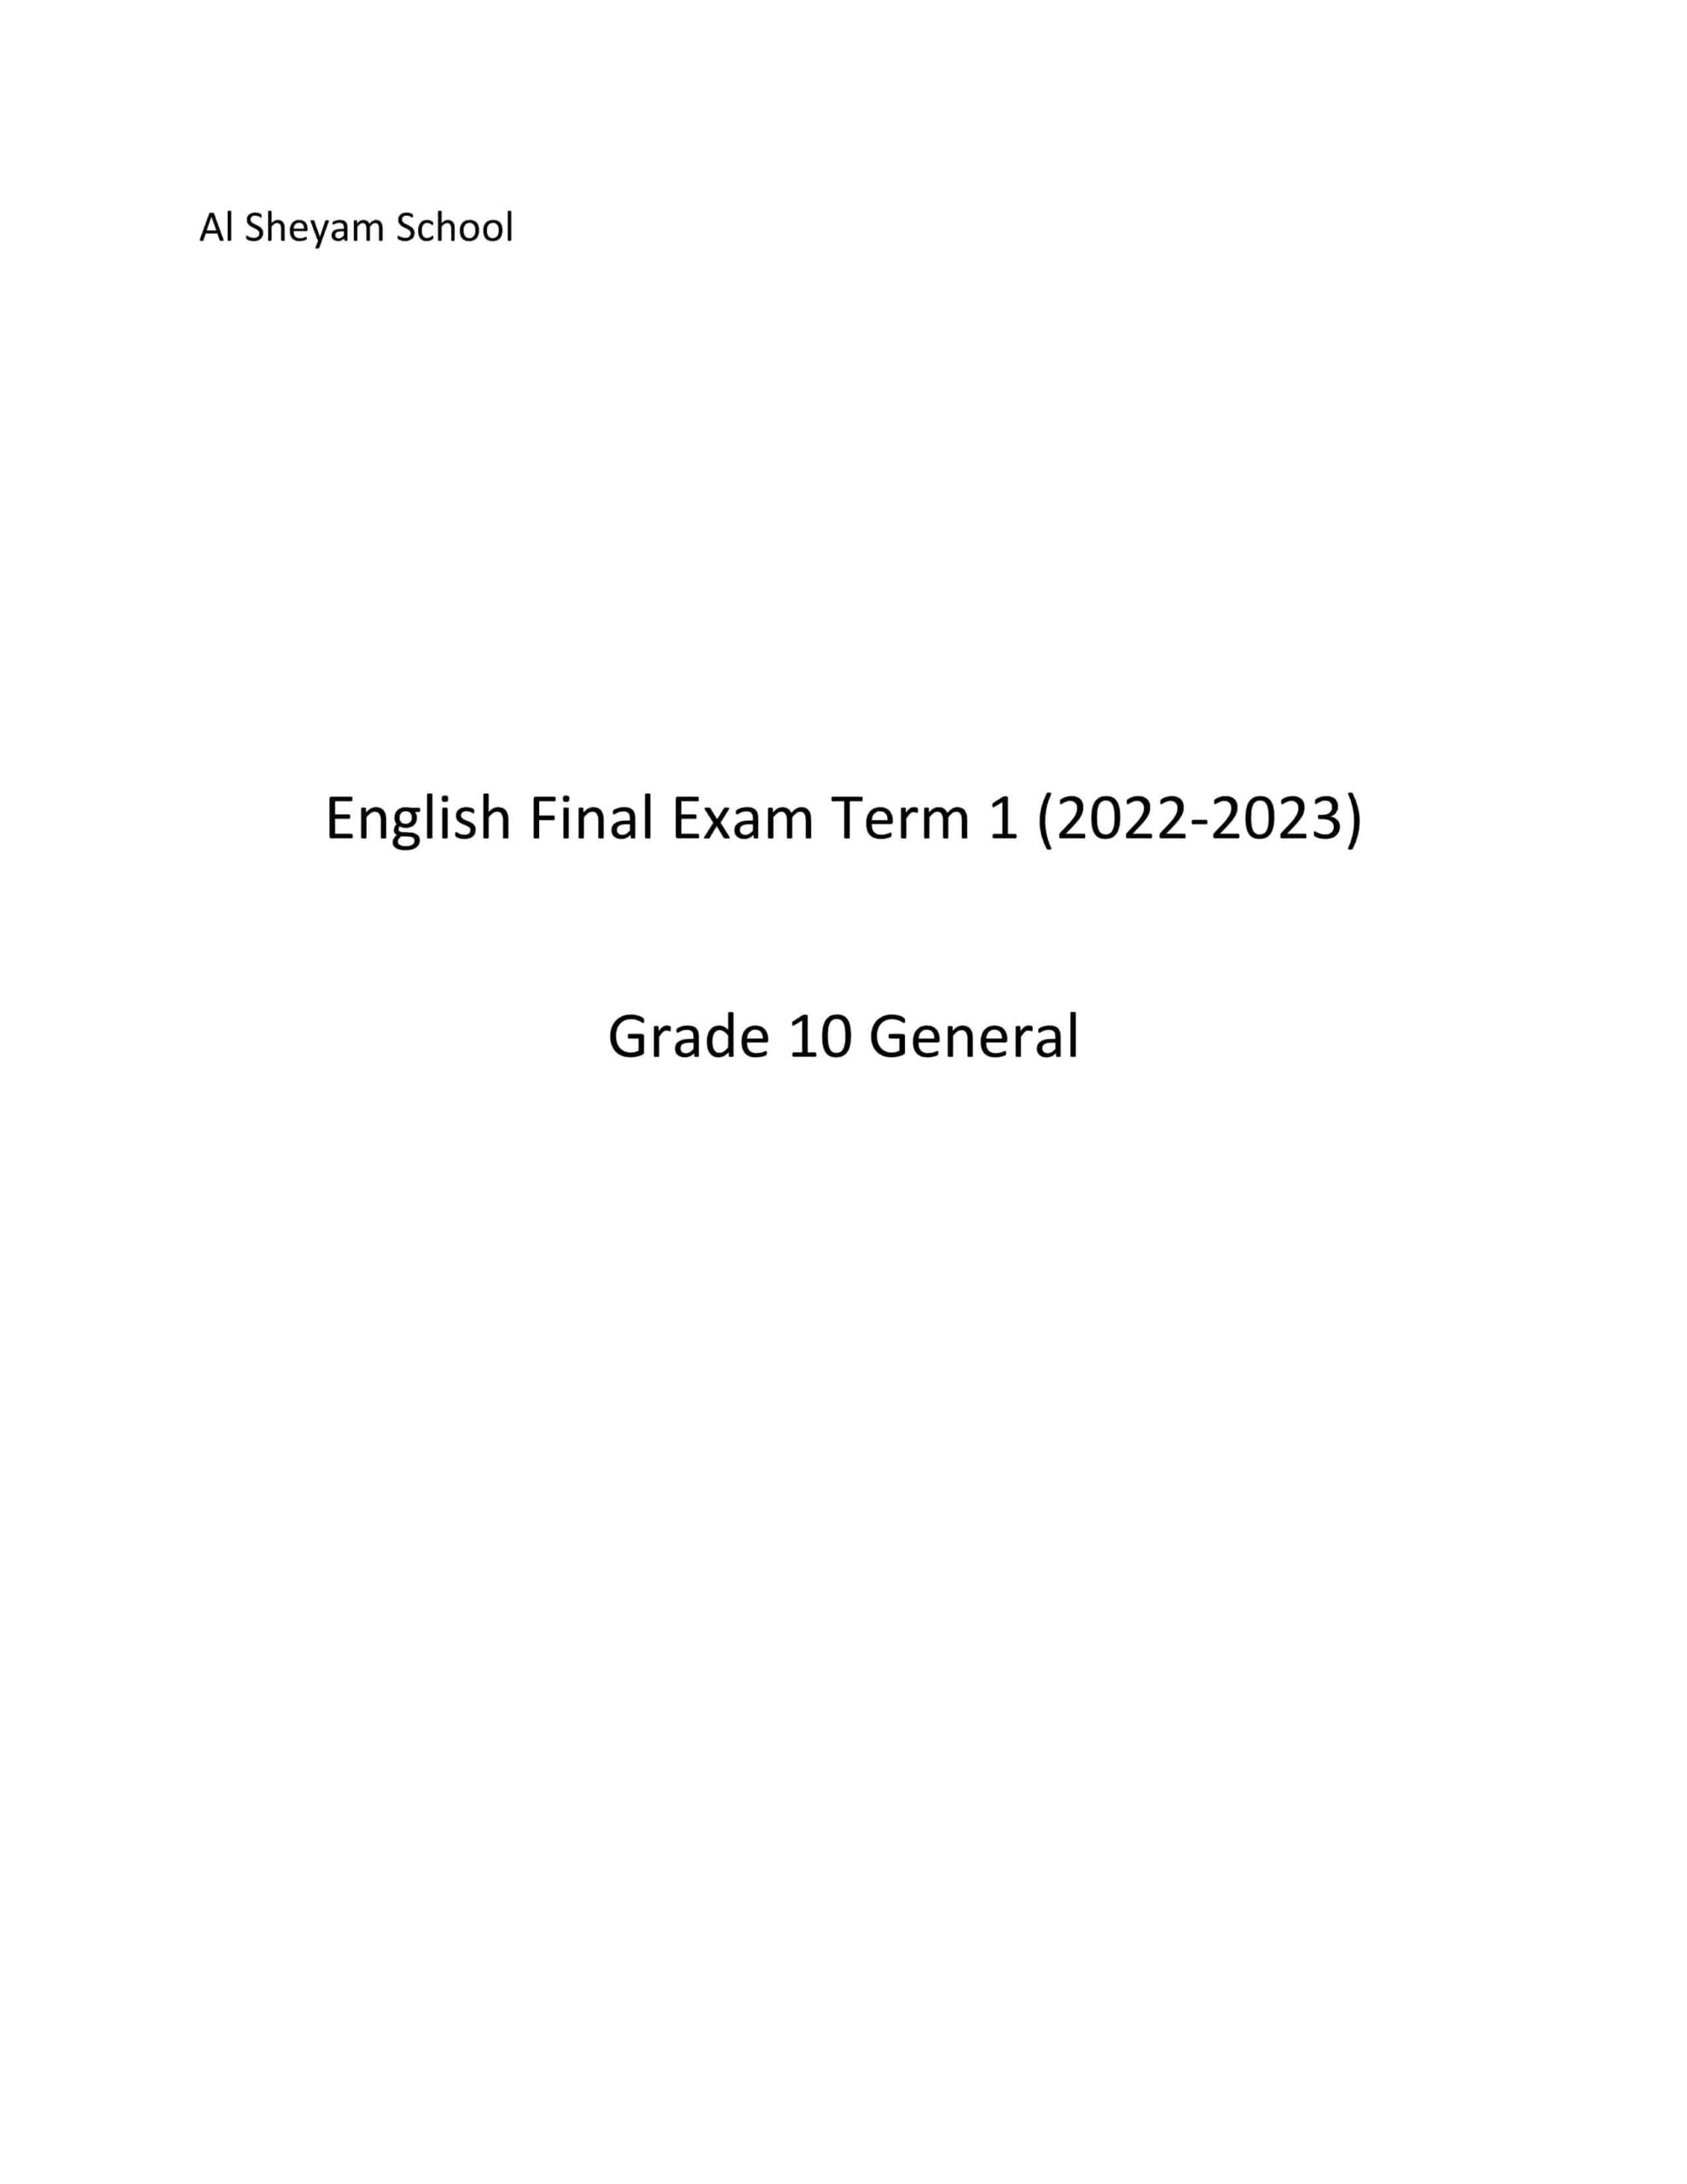 حل امتحان نهاية الفصل الدراسي الأول اللغة الإنجليزية الصف العاشر عام 2022-2023